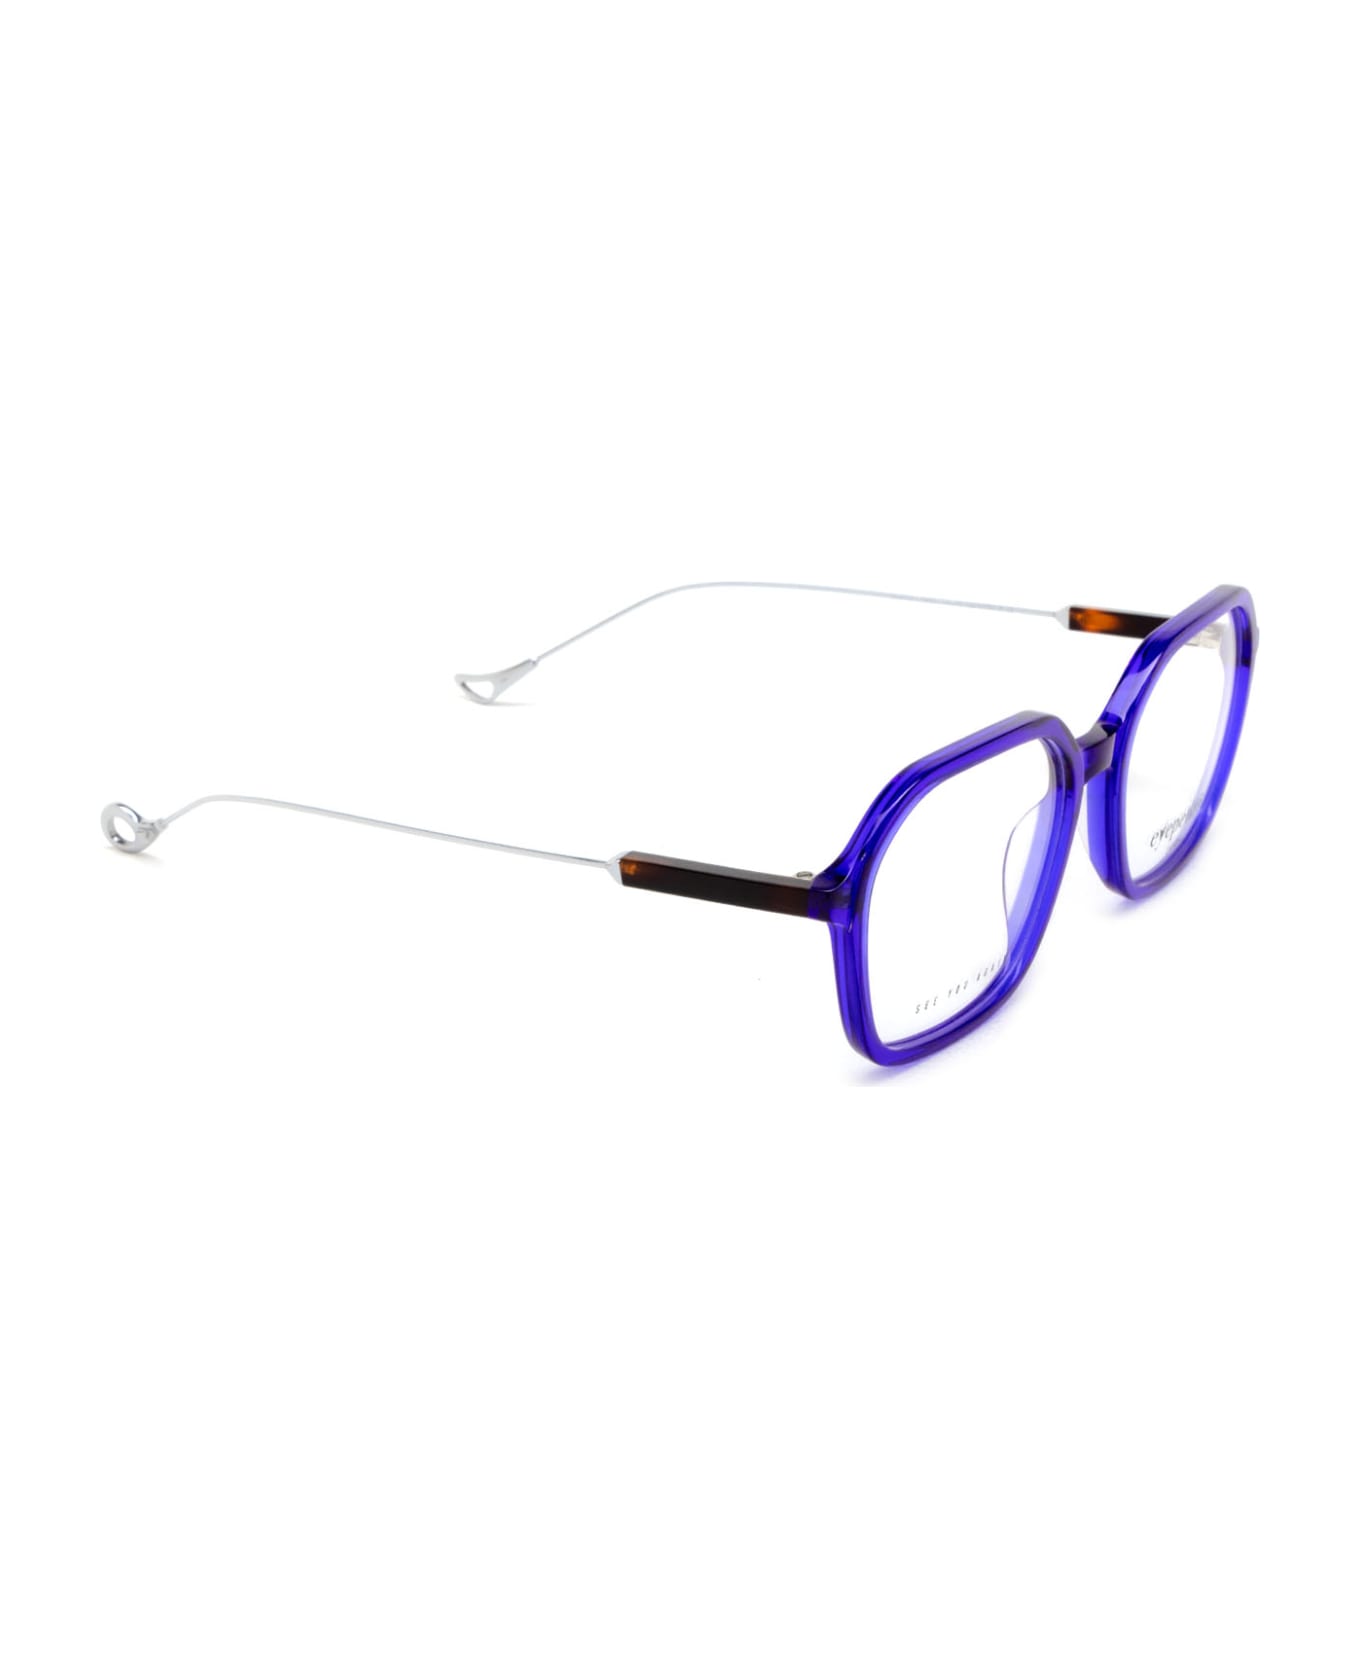 Eyepetizer Aida Opt Blue Glasses - Blue アイウェア